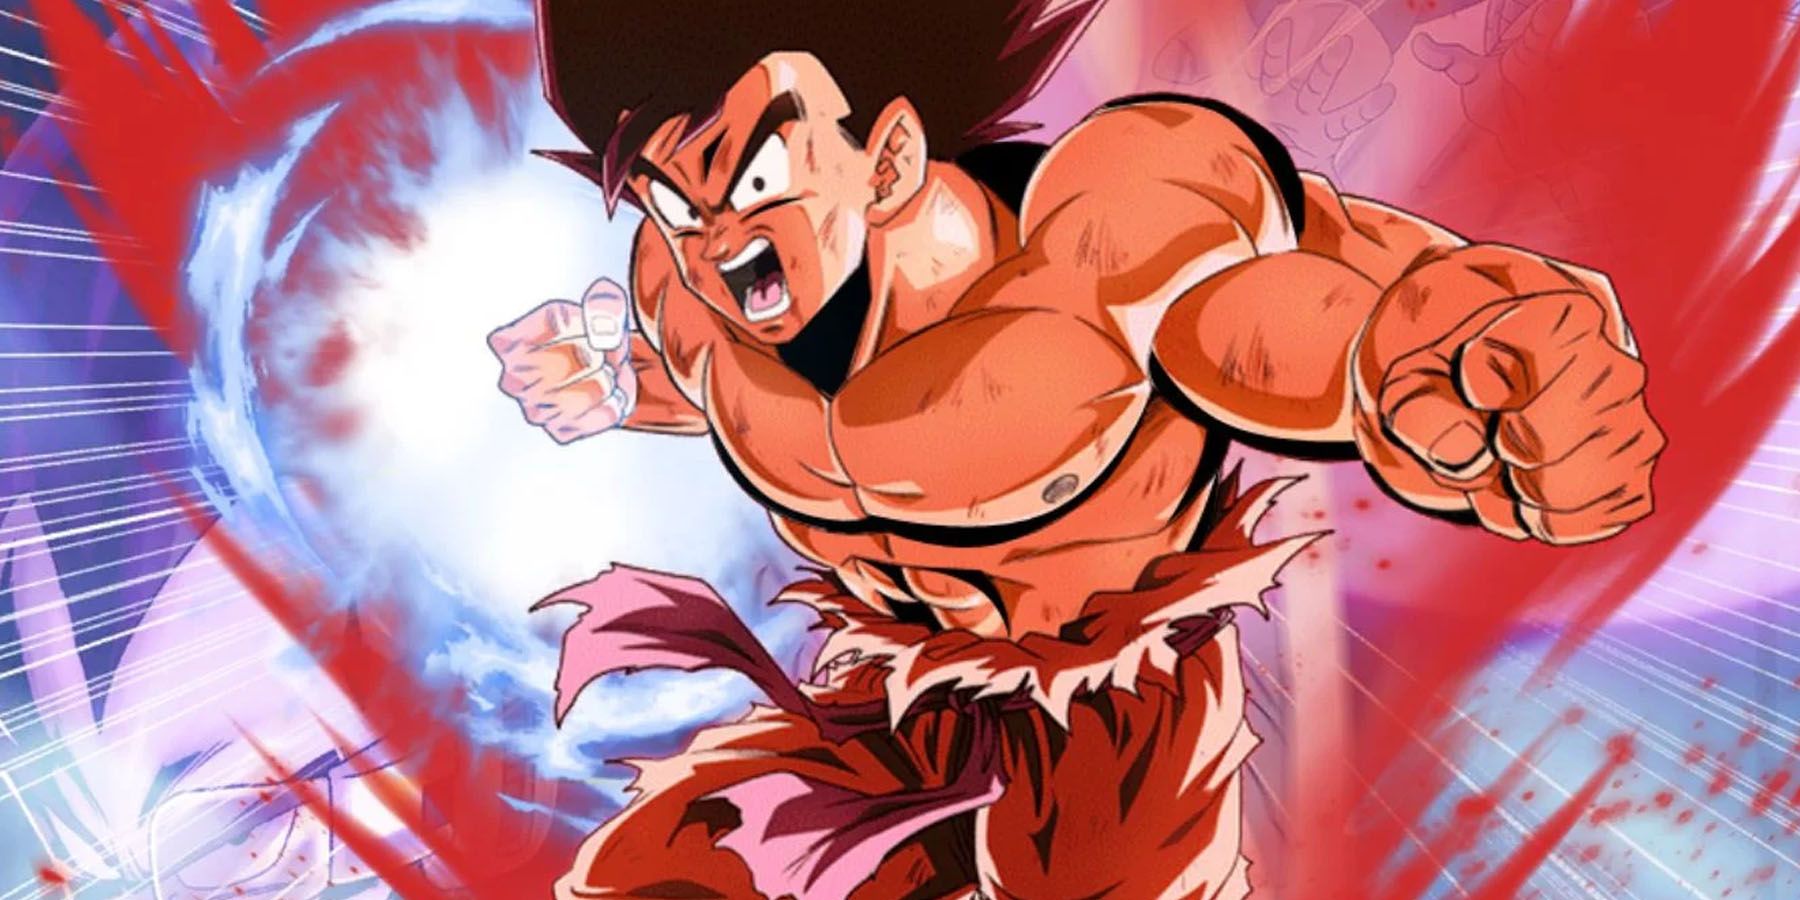 Goku using Kaio Ken